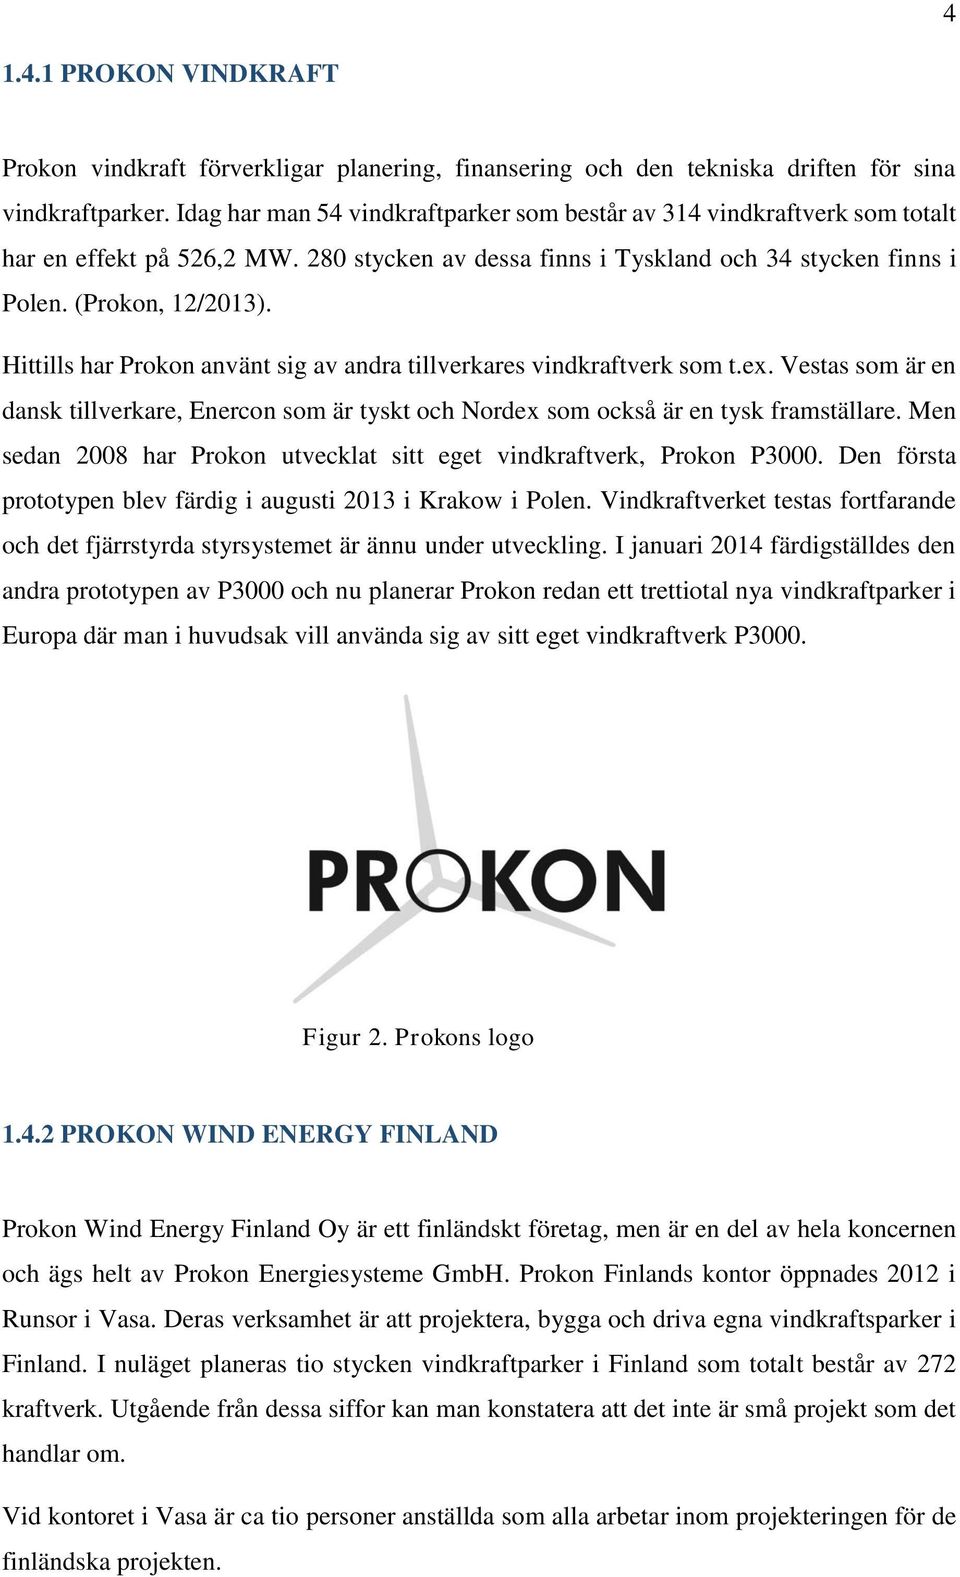 Hittills har Prokon använt sig av andra tillverkares vindkraftverk som t.ex. Vestas som är en dansk tillverkare, Enercon som är tyskt och Nordex som också är en tysk framställare.